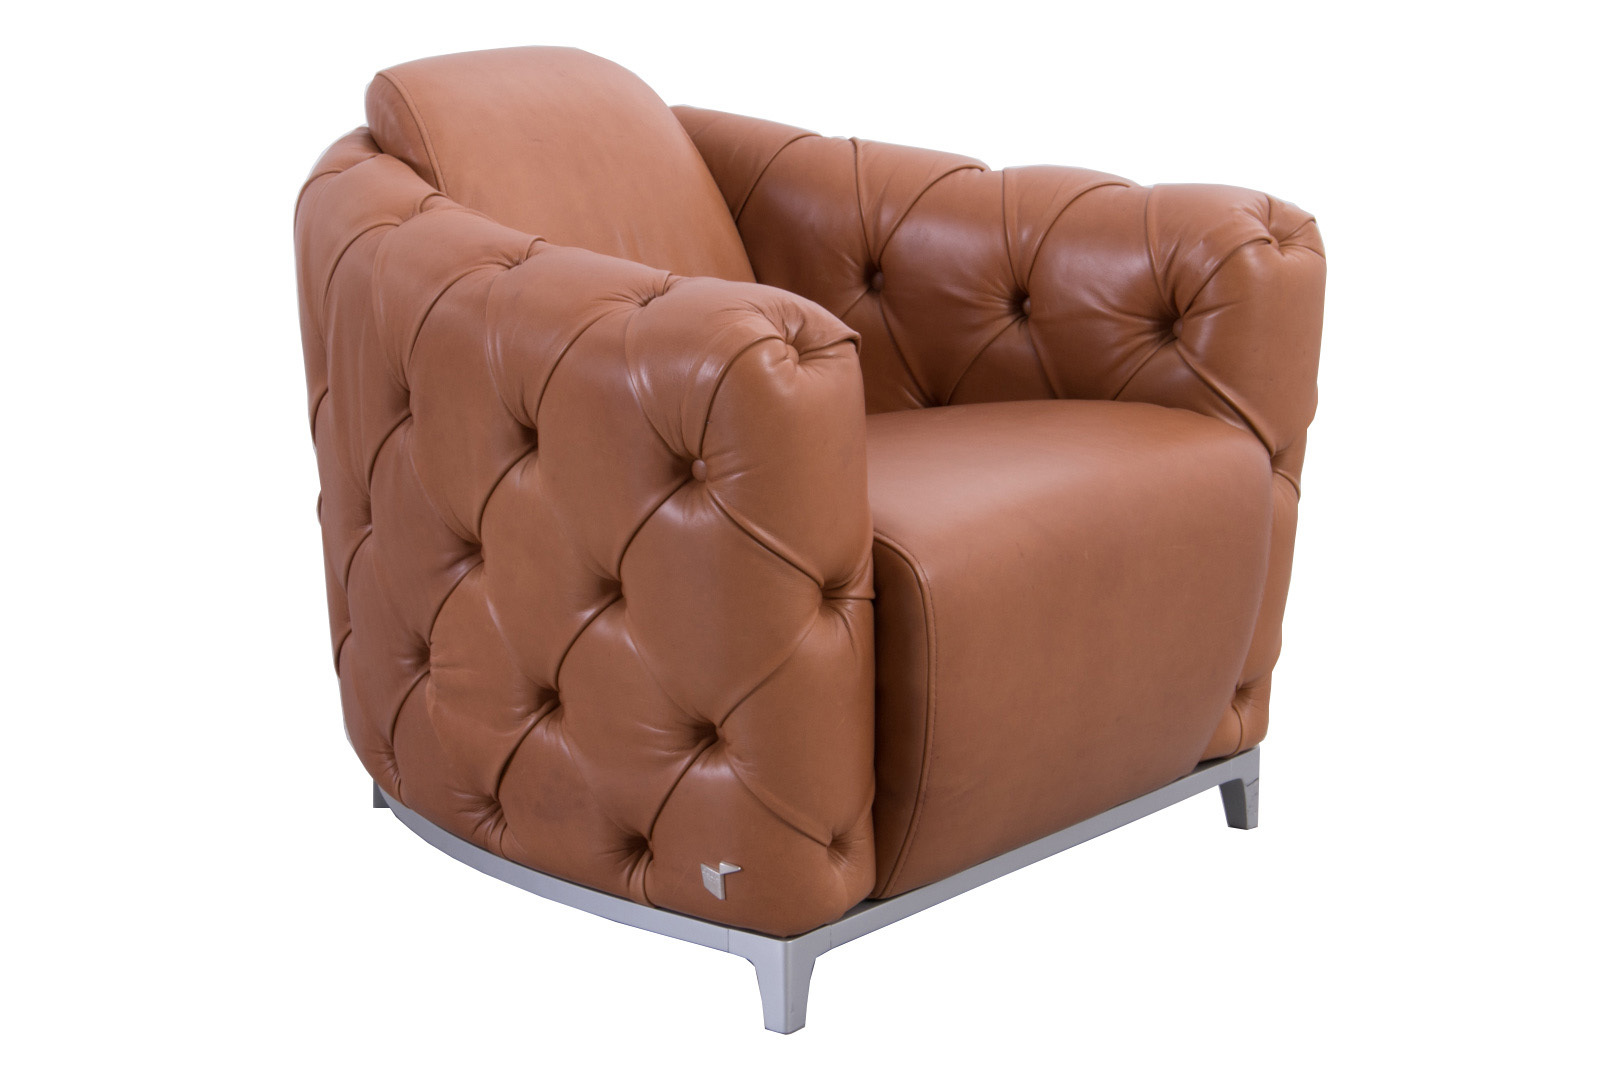 Calia Italia Deliziosa 997 Leather, Calia Leather Chair